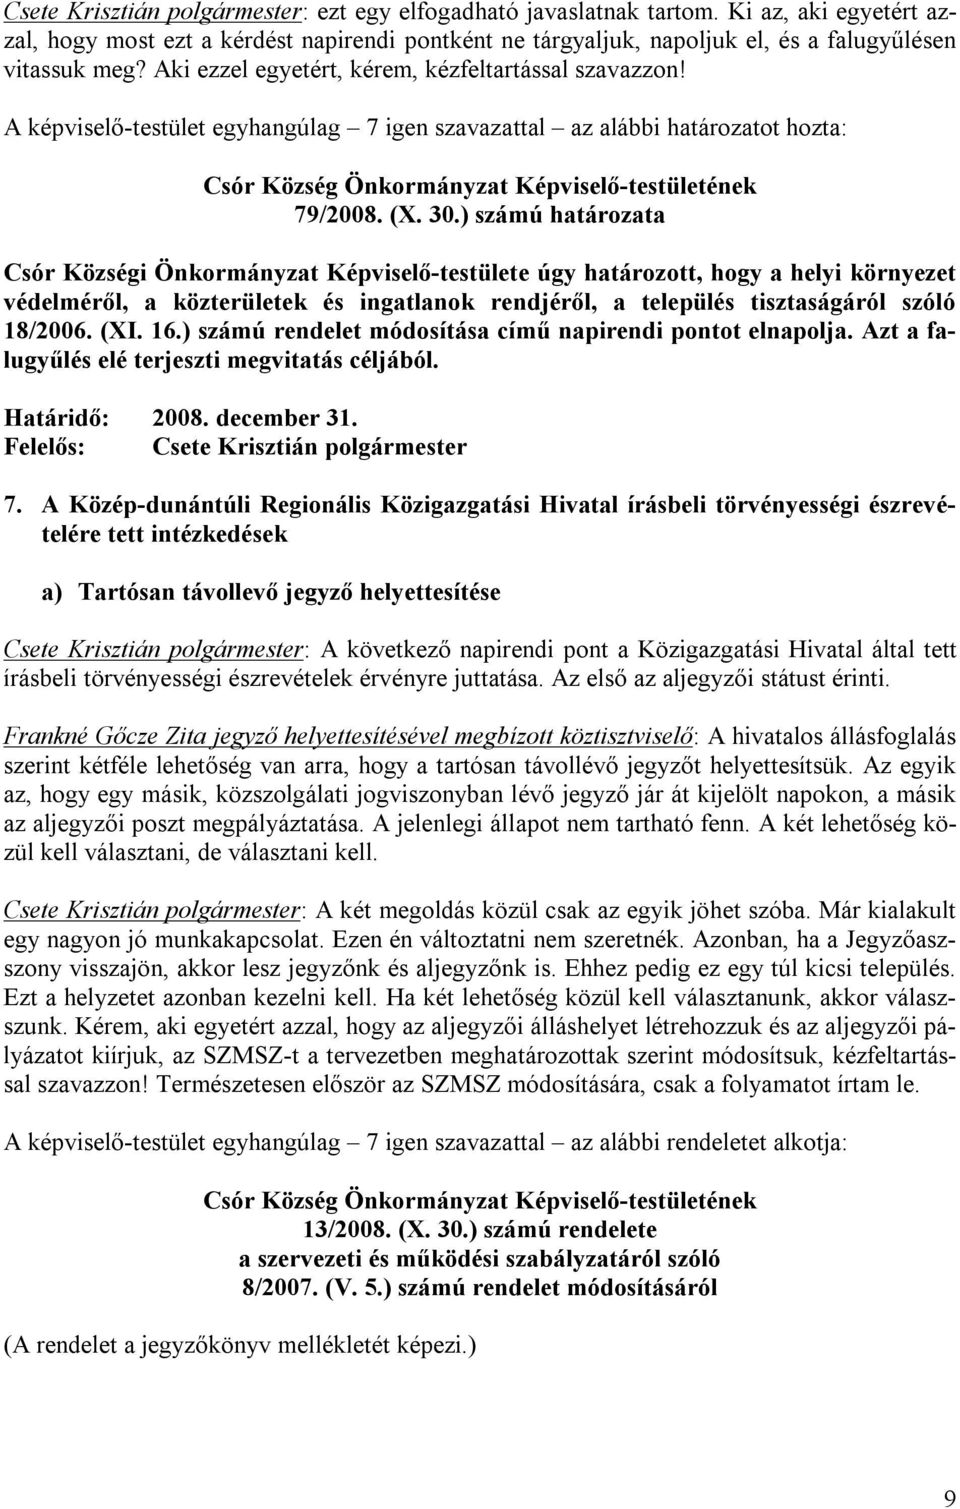 ) számú határozata Csór Községi Önkormányzat Képviselő-testülete úgy határozott, hogy a helyi környezet védelméről, a közterületek és ingatlanok rendjéről, a település tisztaságáról szóló 18/2006.